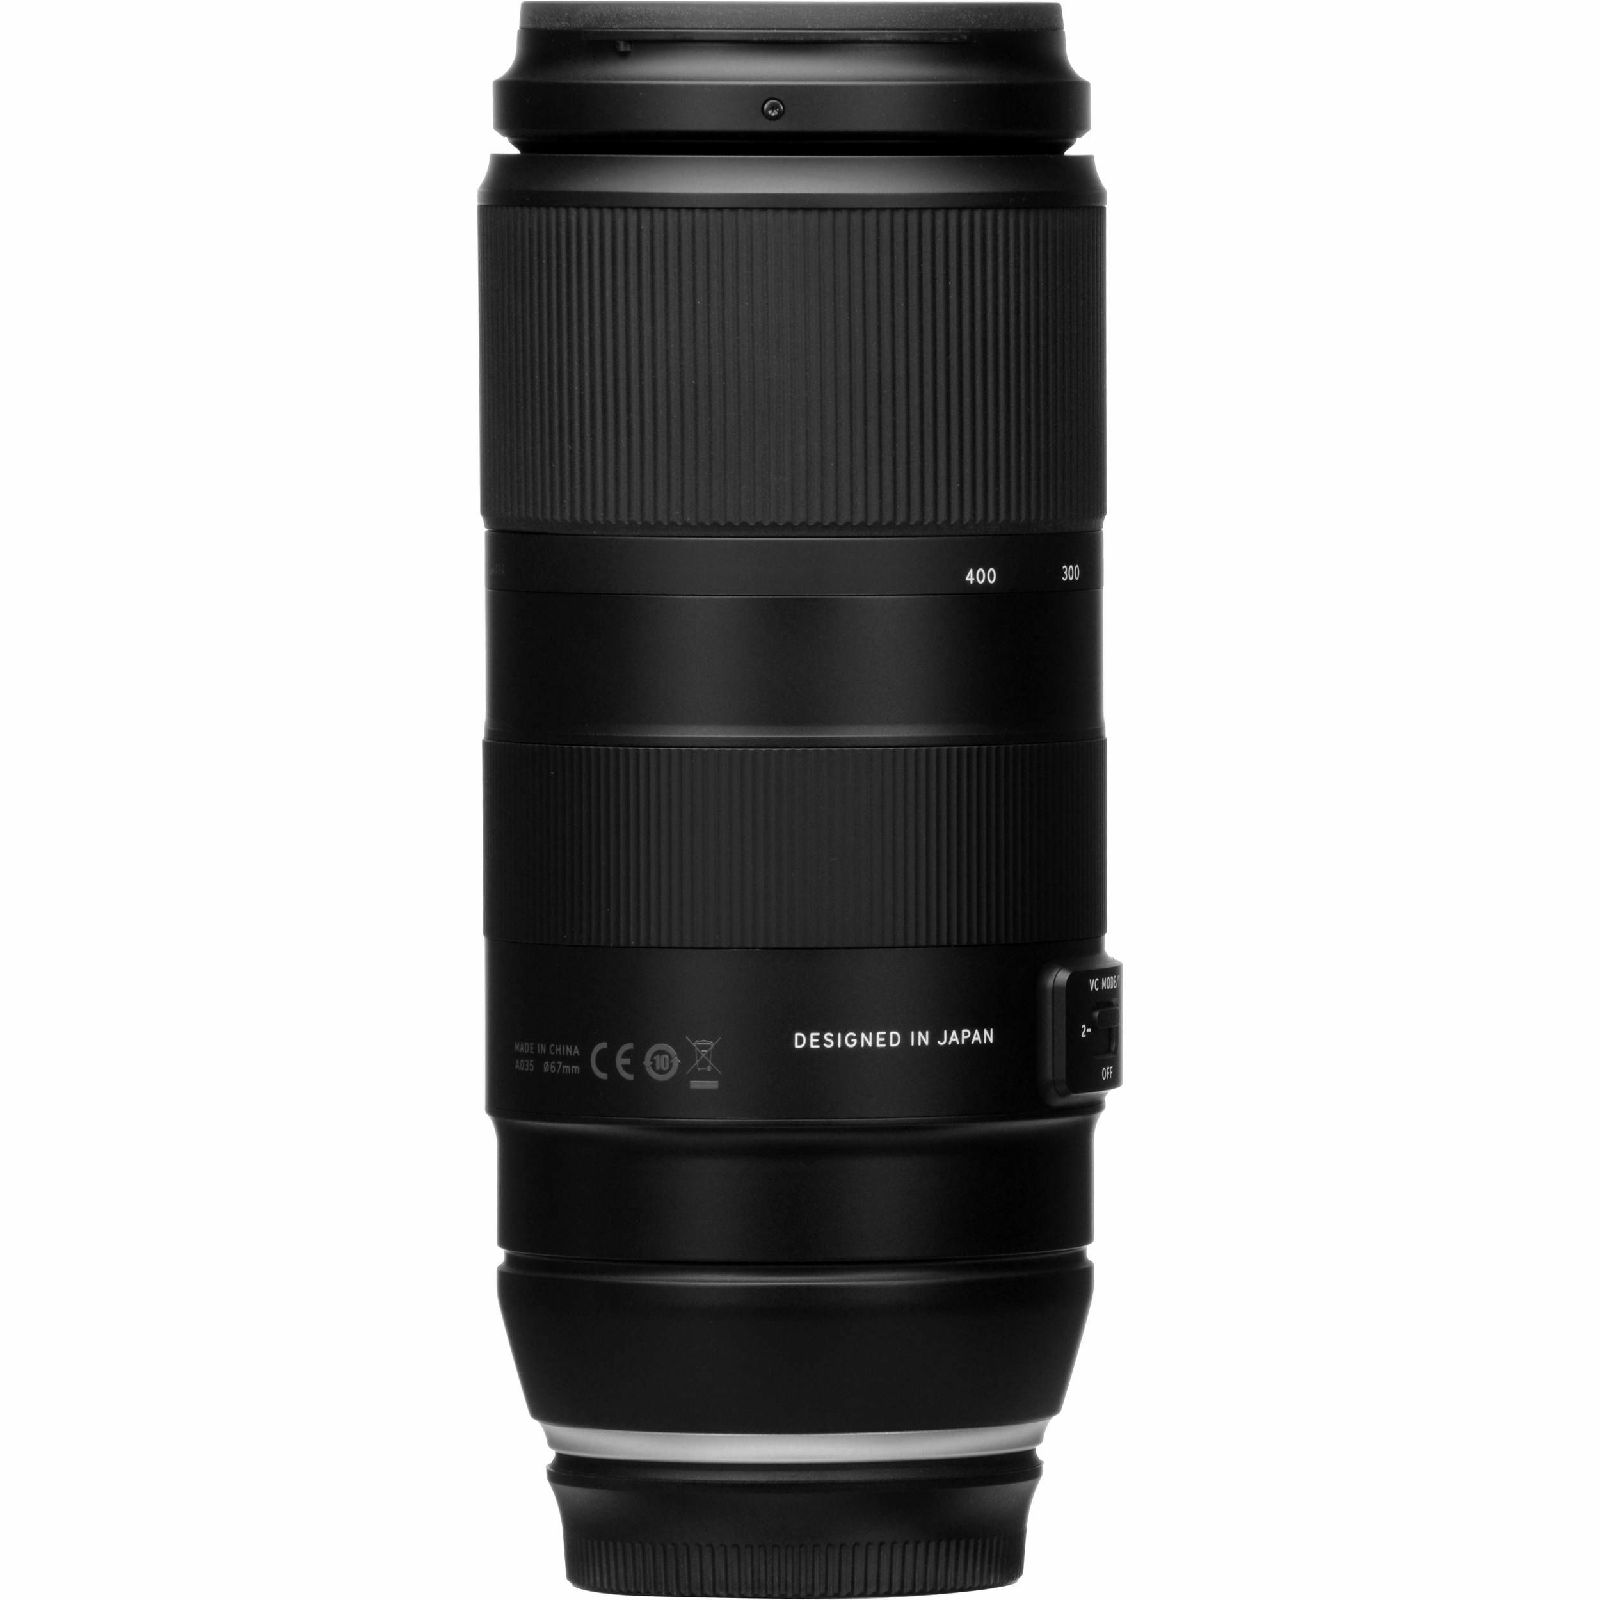 Tamron AF 100-400mm f/4.5-6.3 Di VC USD objektiv za Nikon FX (A035N)